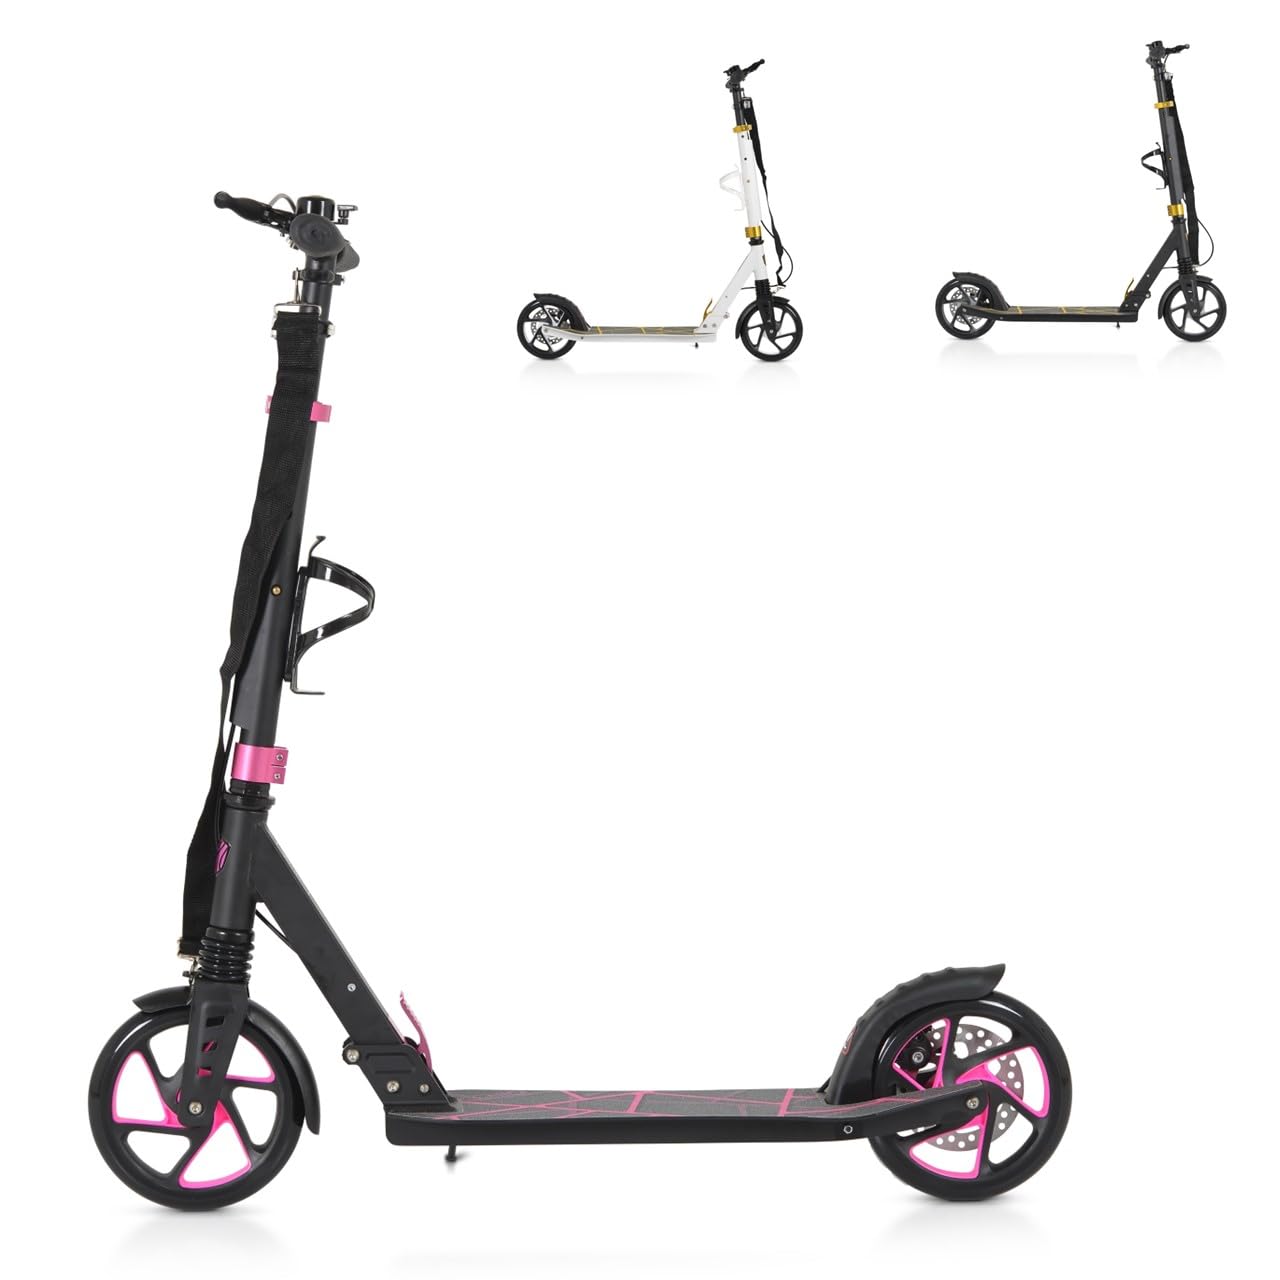 Byox Kinderroller Chic PU-Räder, LED-Licht, ABEC-7 Lager, Seitenständer, faltbar, Farbe:pink